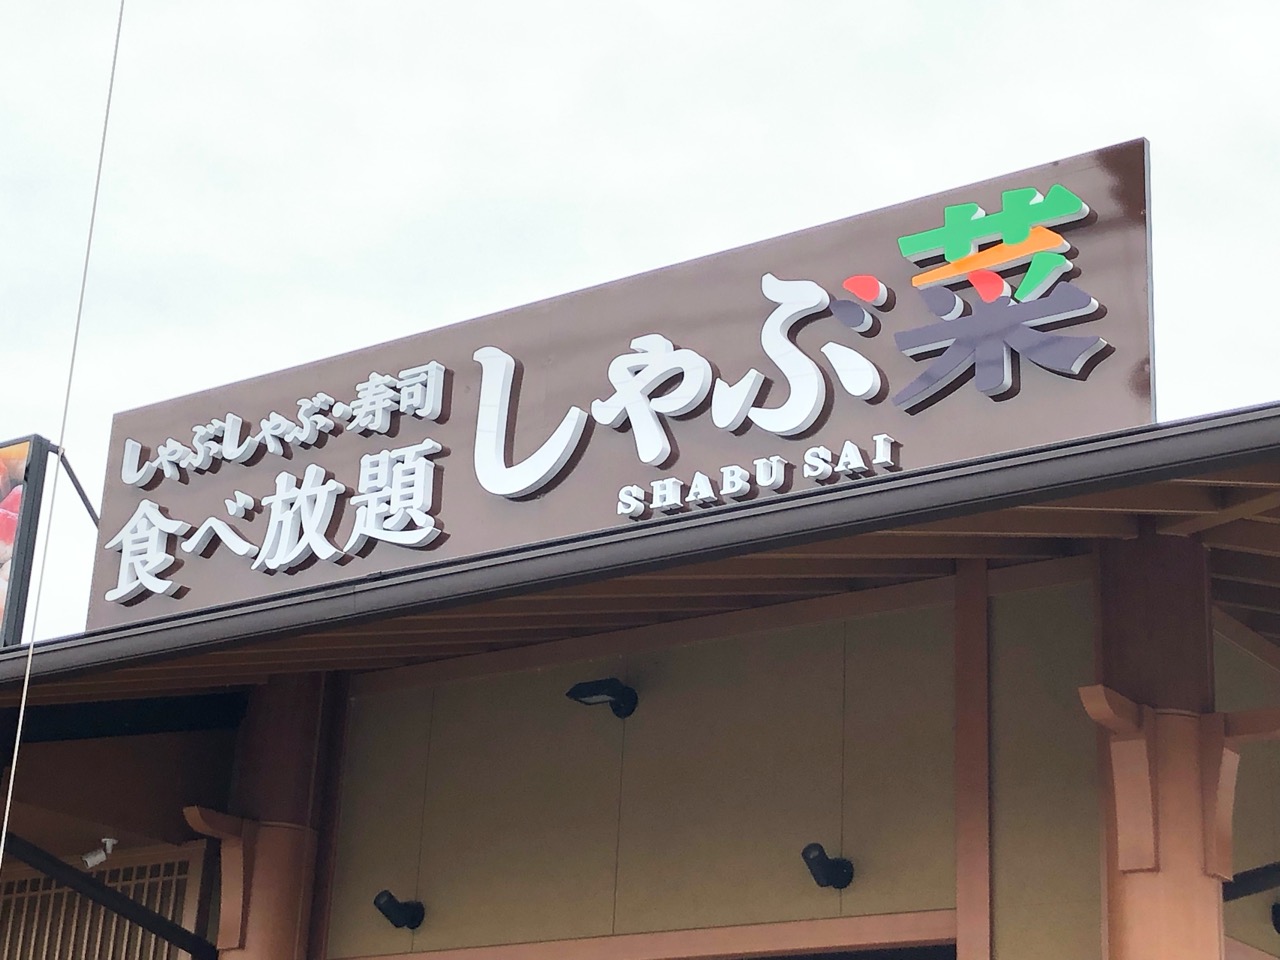 2019年10月29日に前田町にオープンするしゃぶ菜